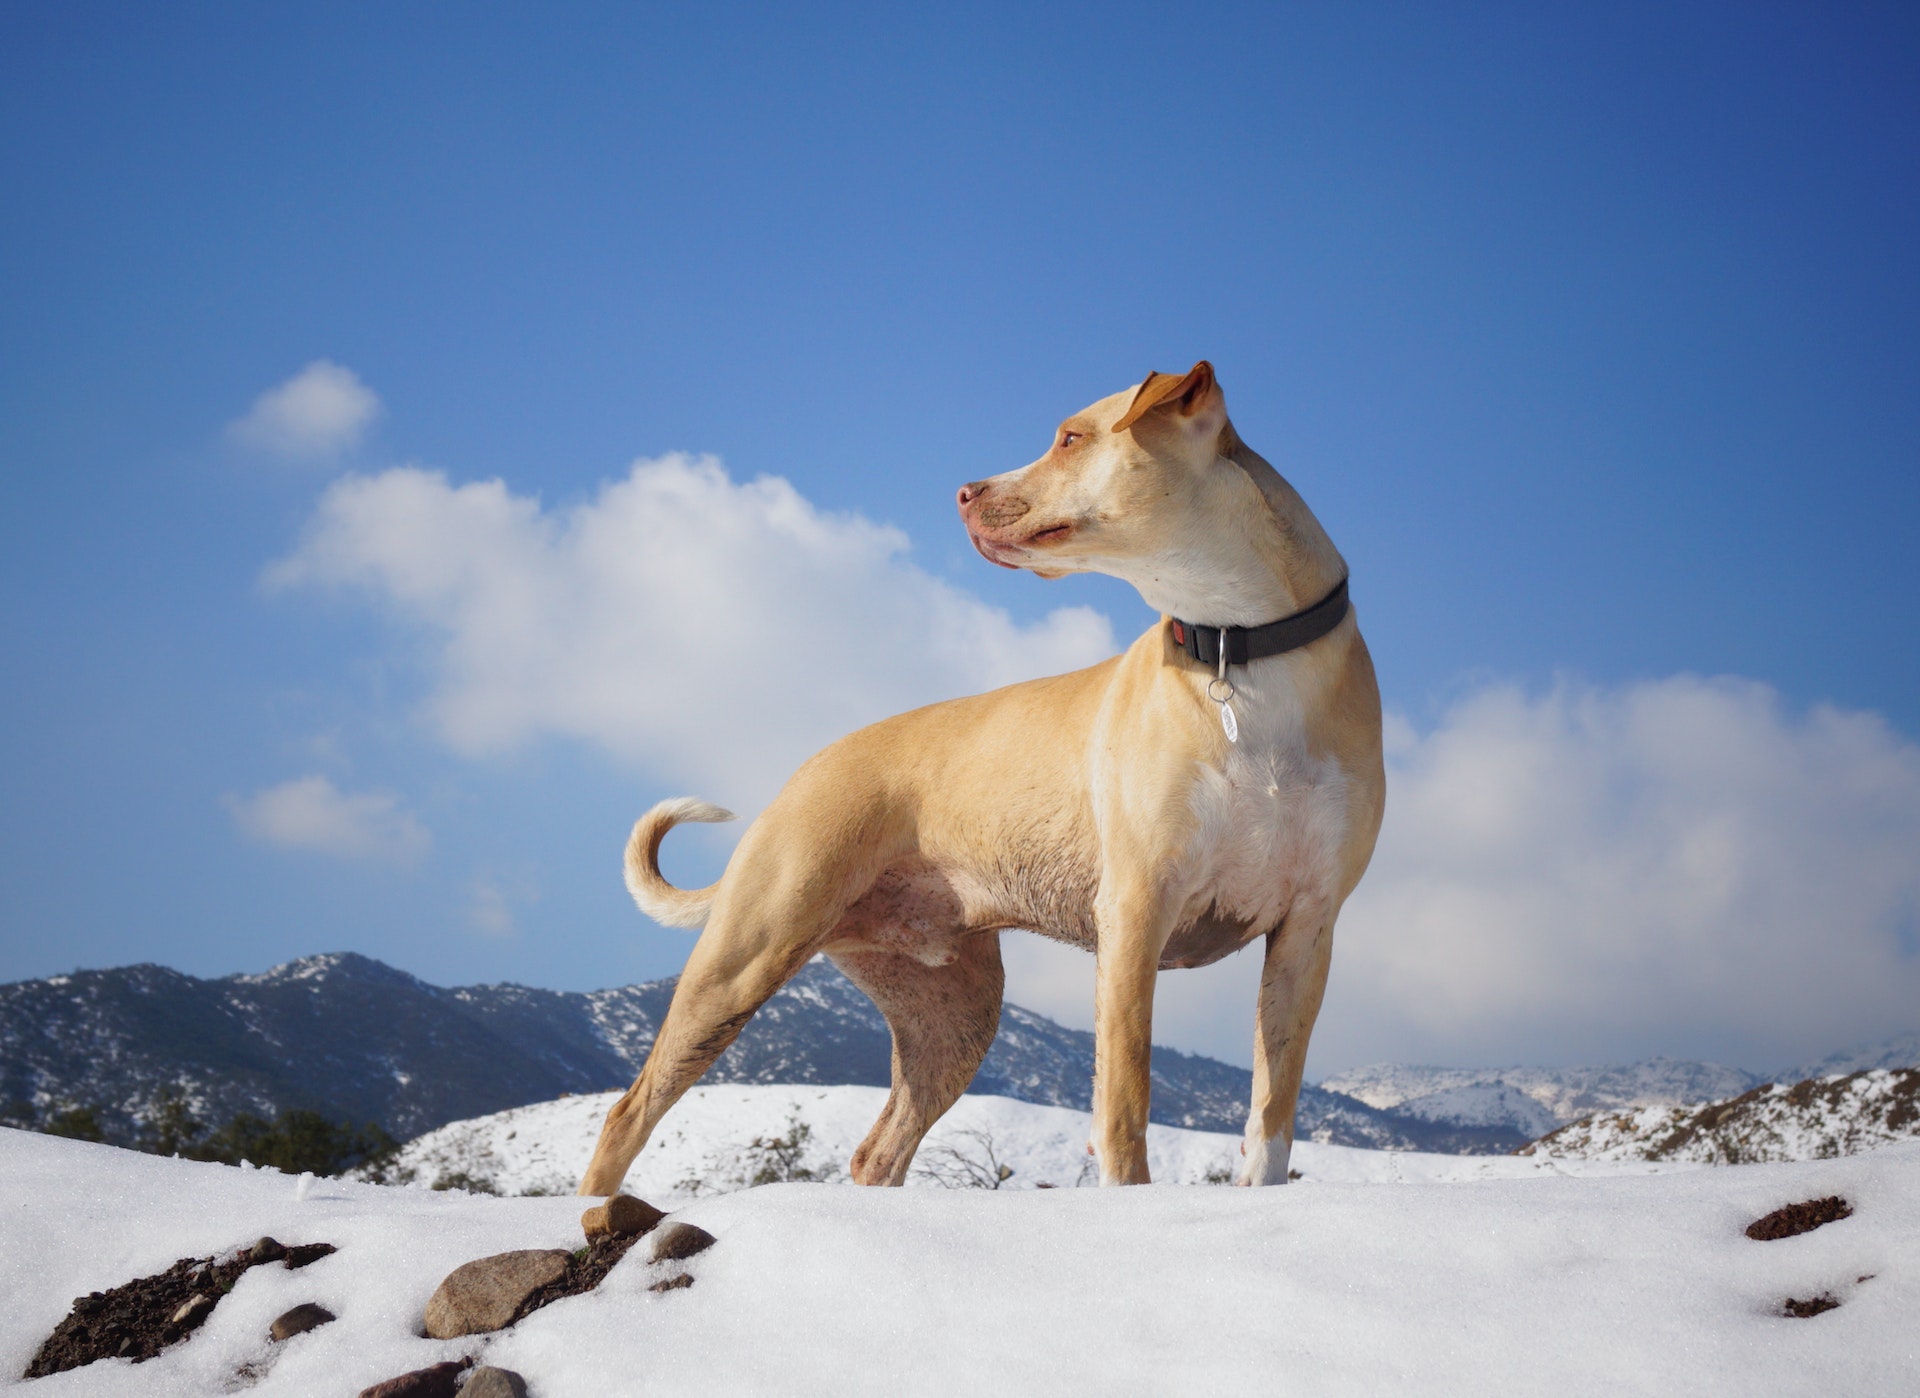 Pies stojący na pokrytym śniegiem terenie z dobrze widoczną obrożą i identyfikatorem